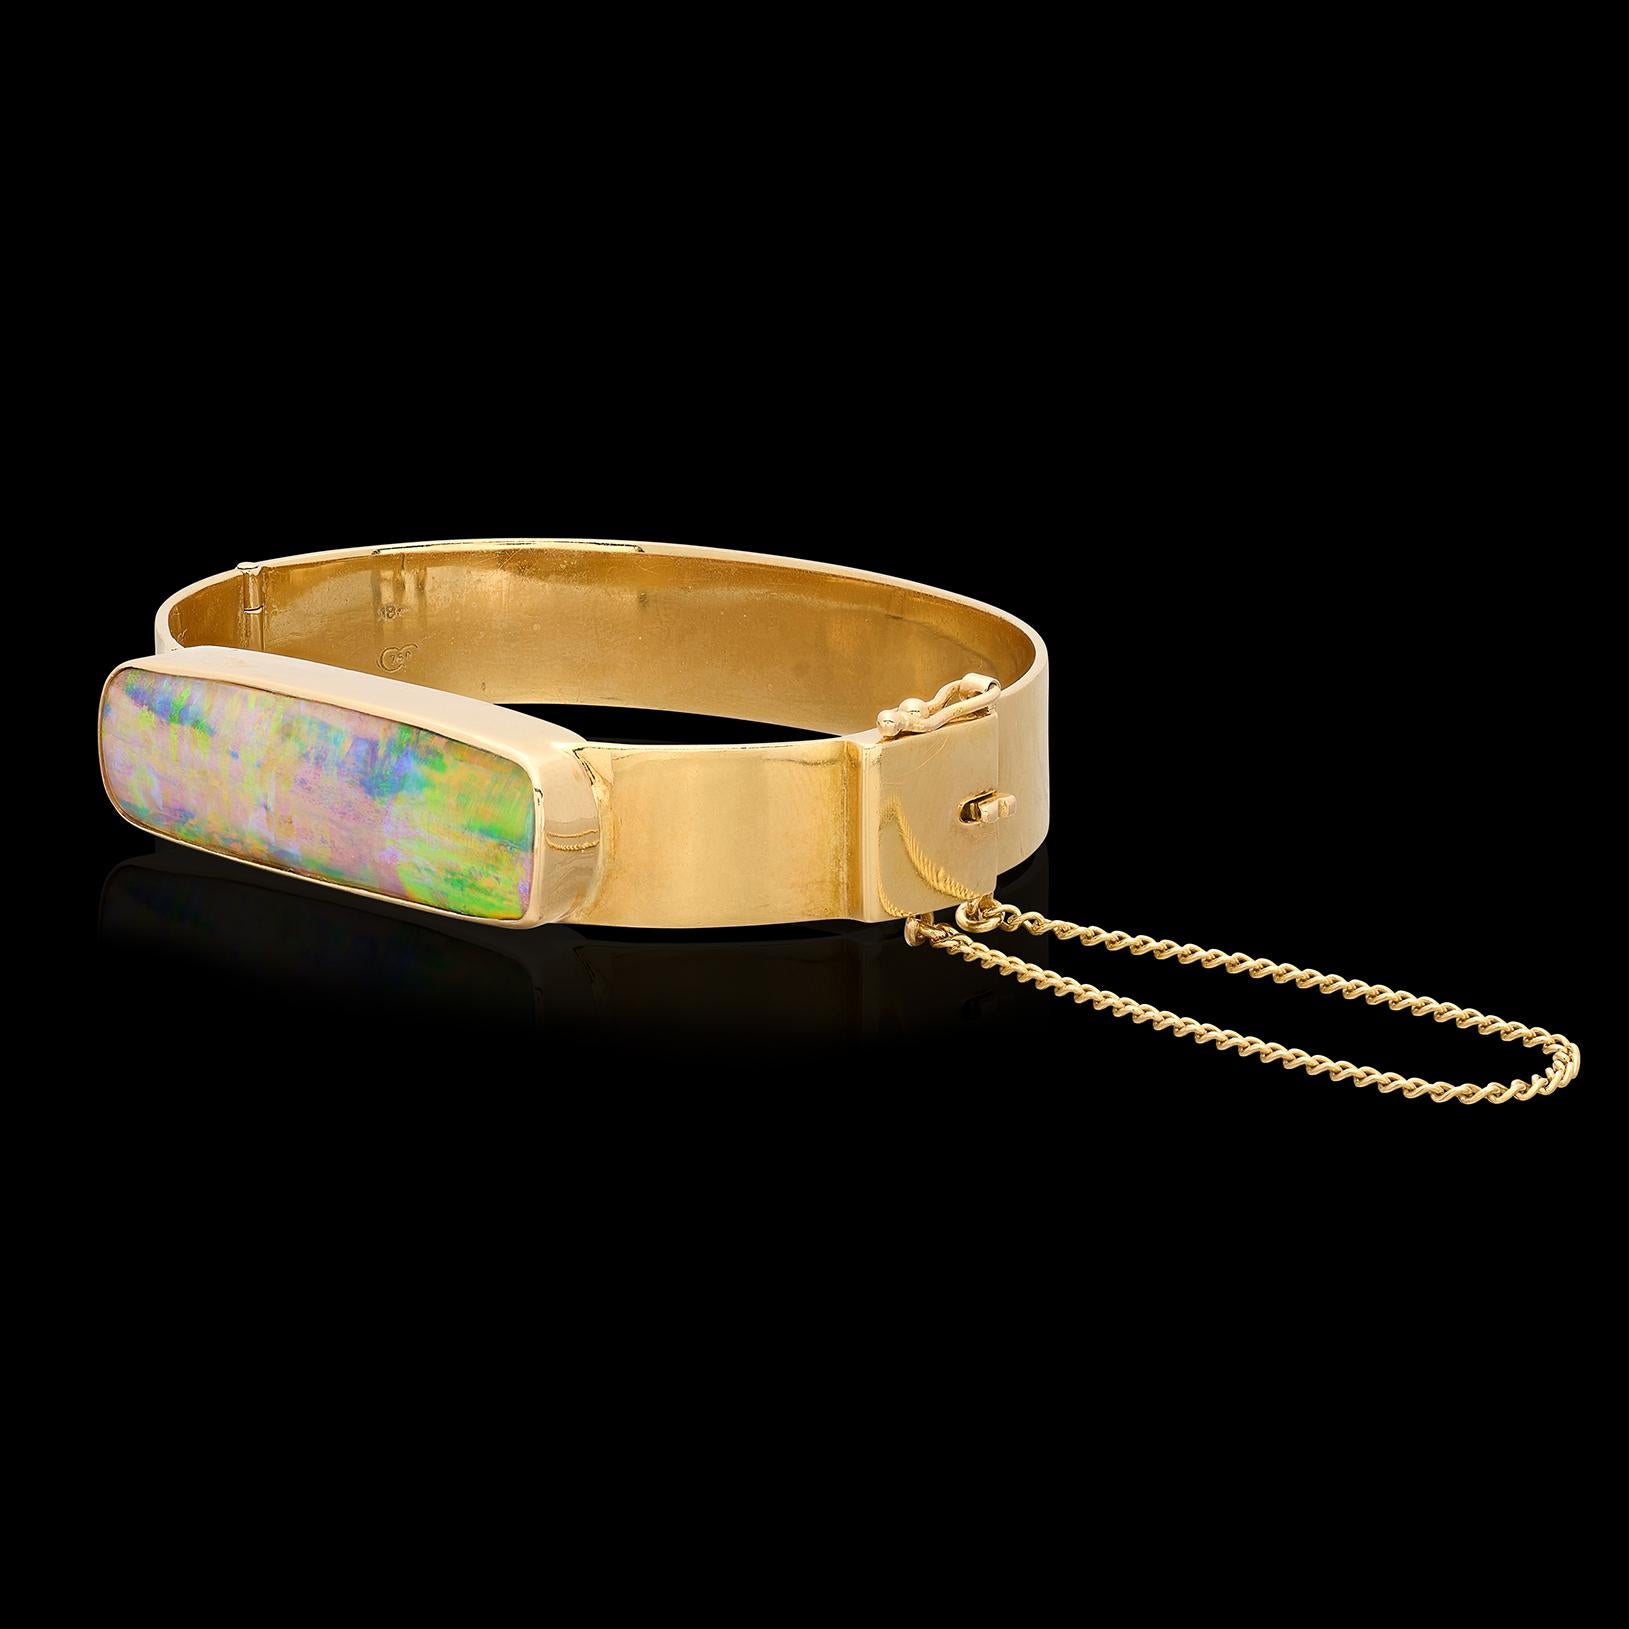 Uncut Australian Opal 18kt Yellow Gold Bracelet